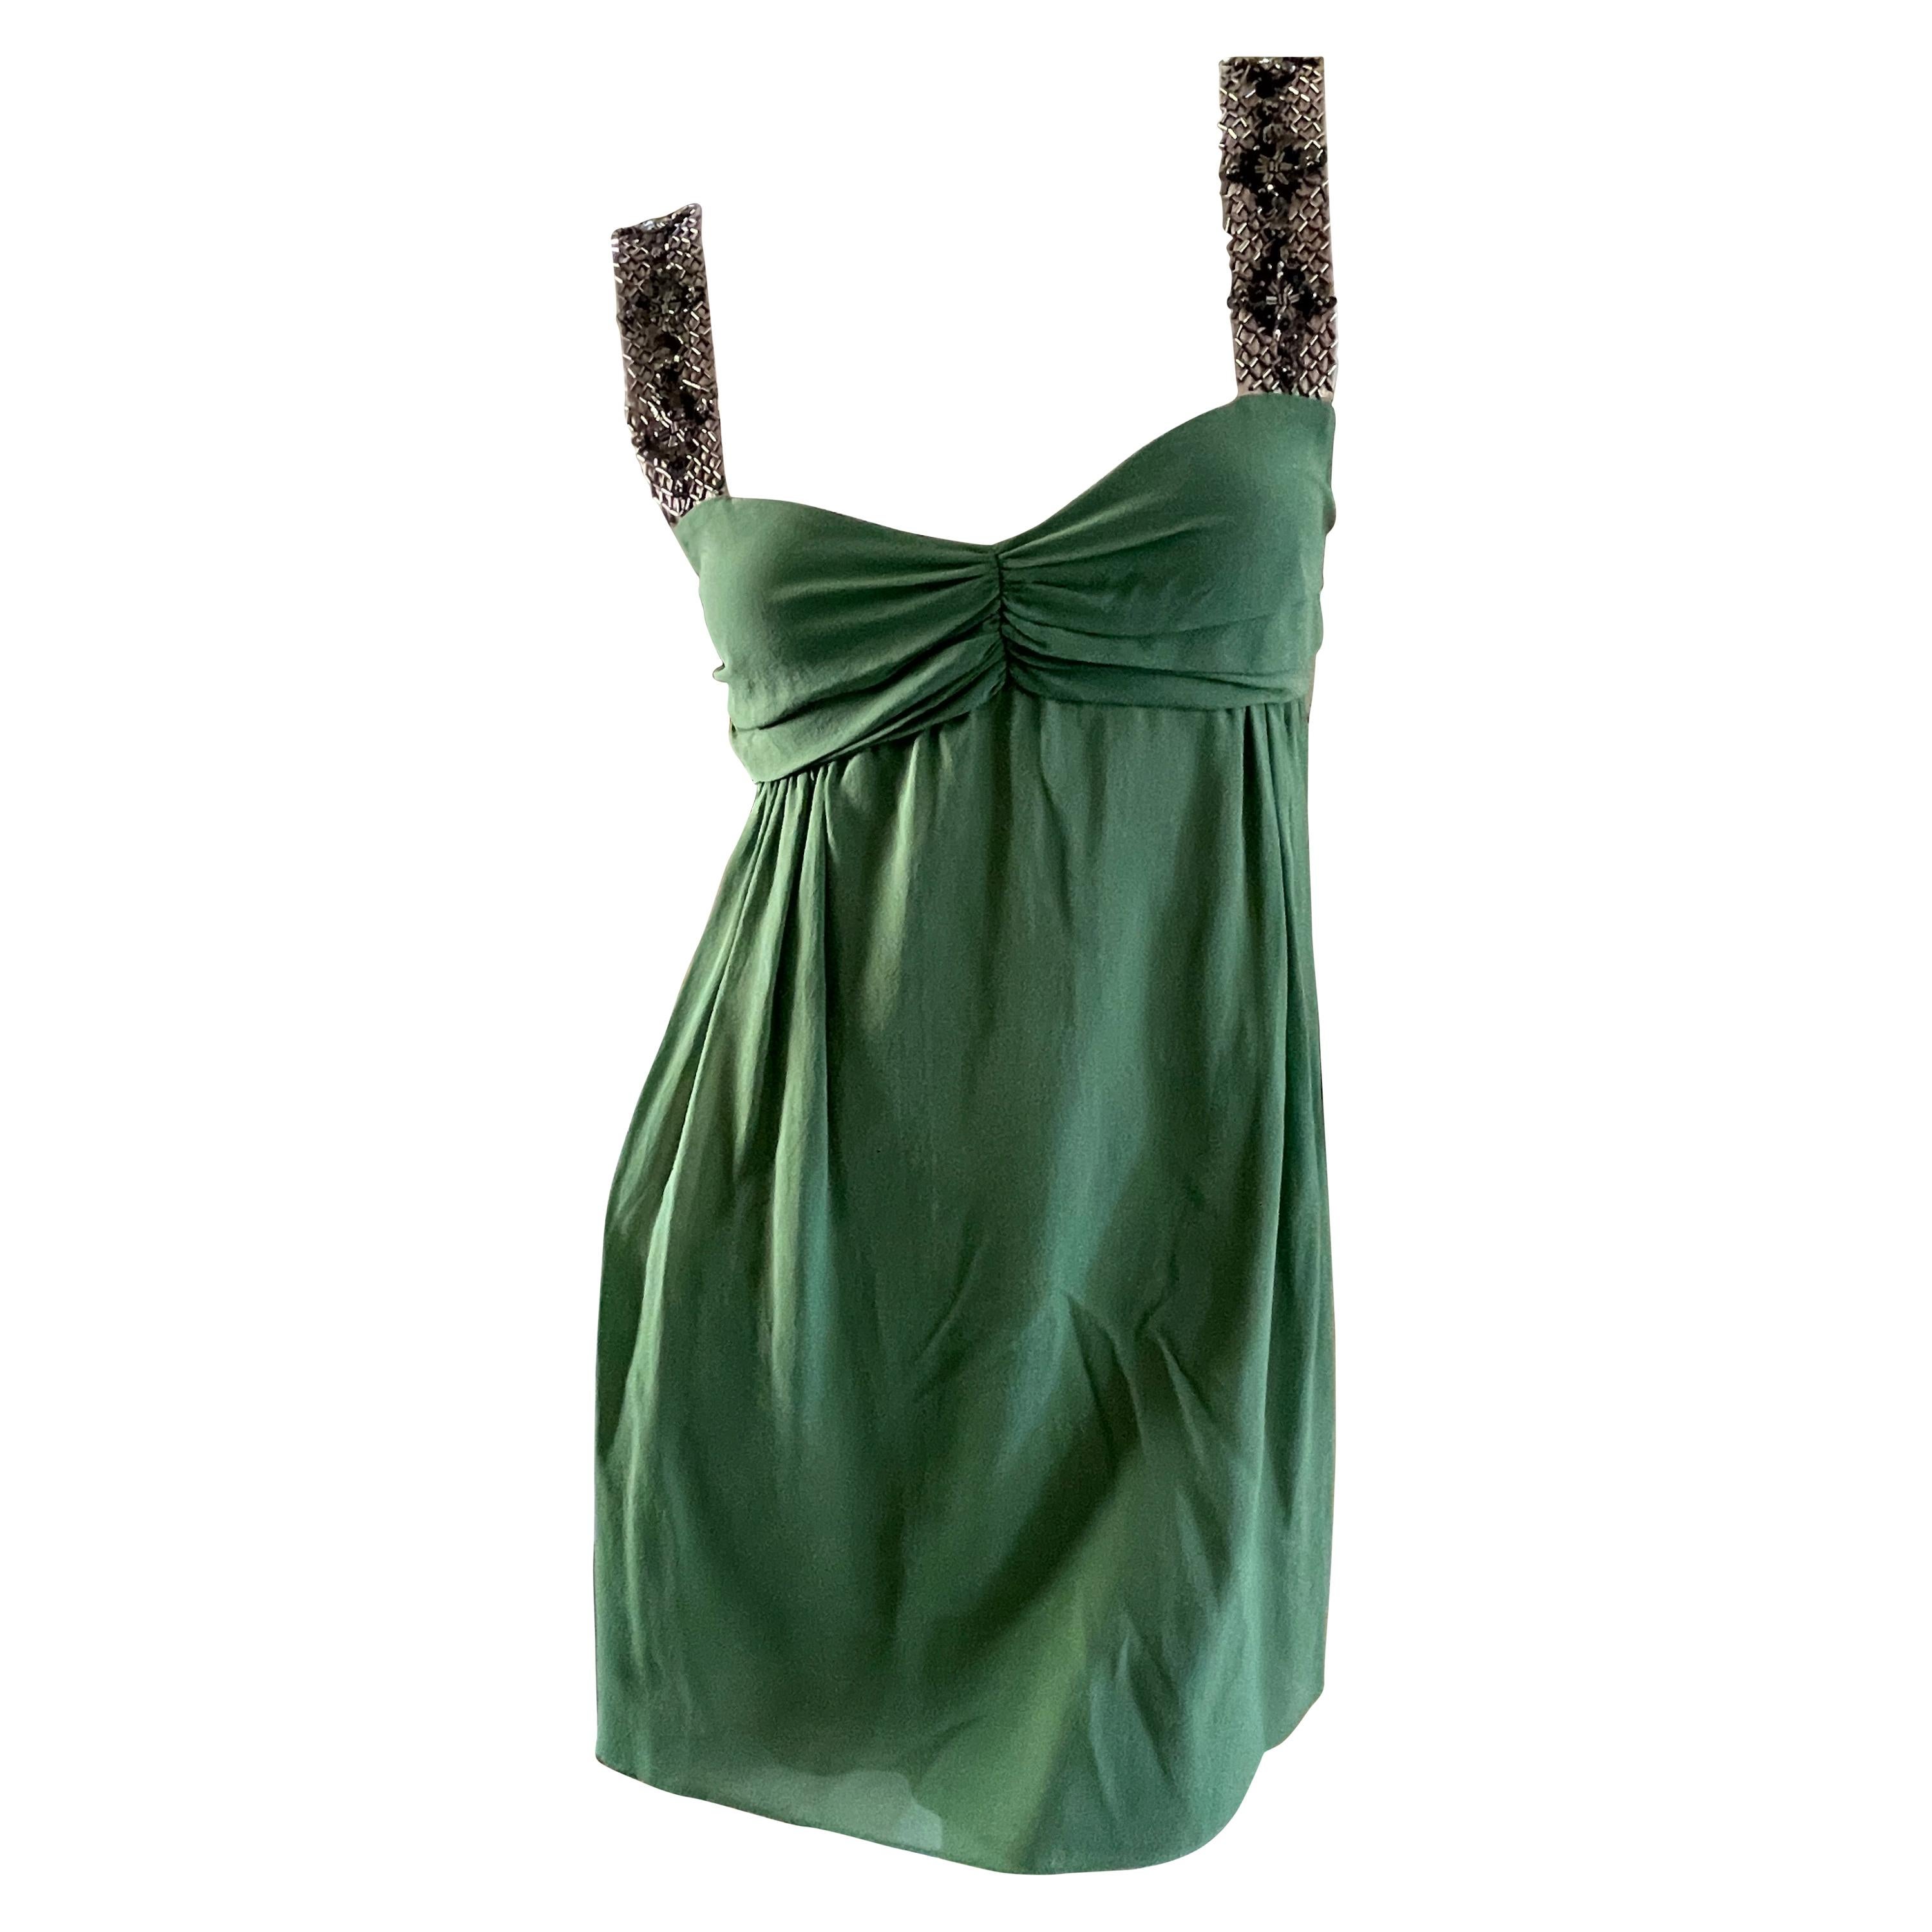  Gianfranco Ferre Vintage Green Silk Embellished Baby Doll Dress  For Sale